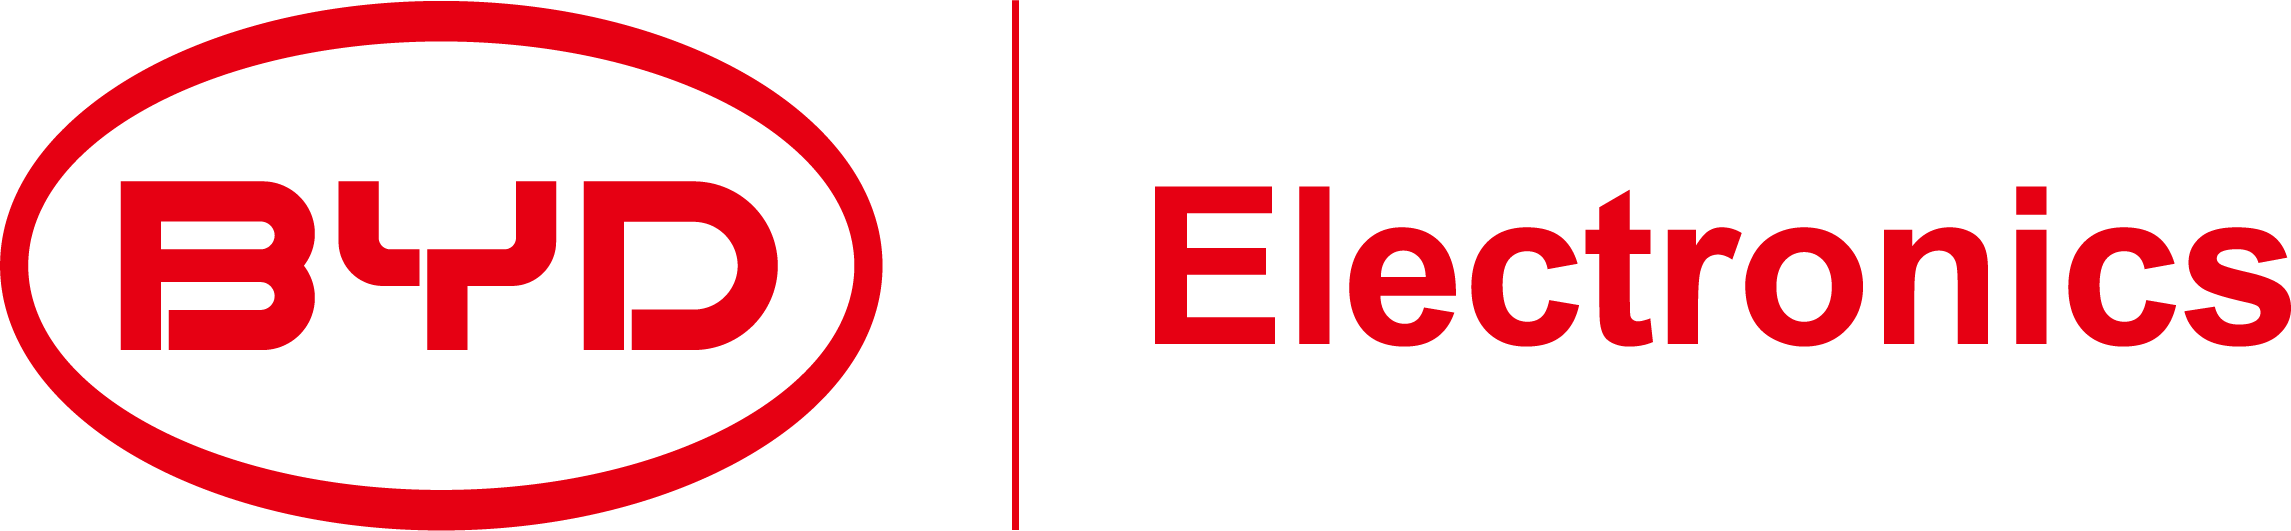 比亚迪电子公司的logo